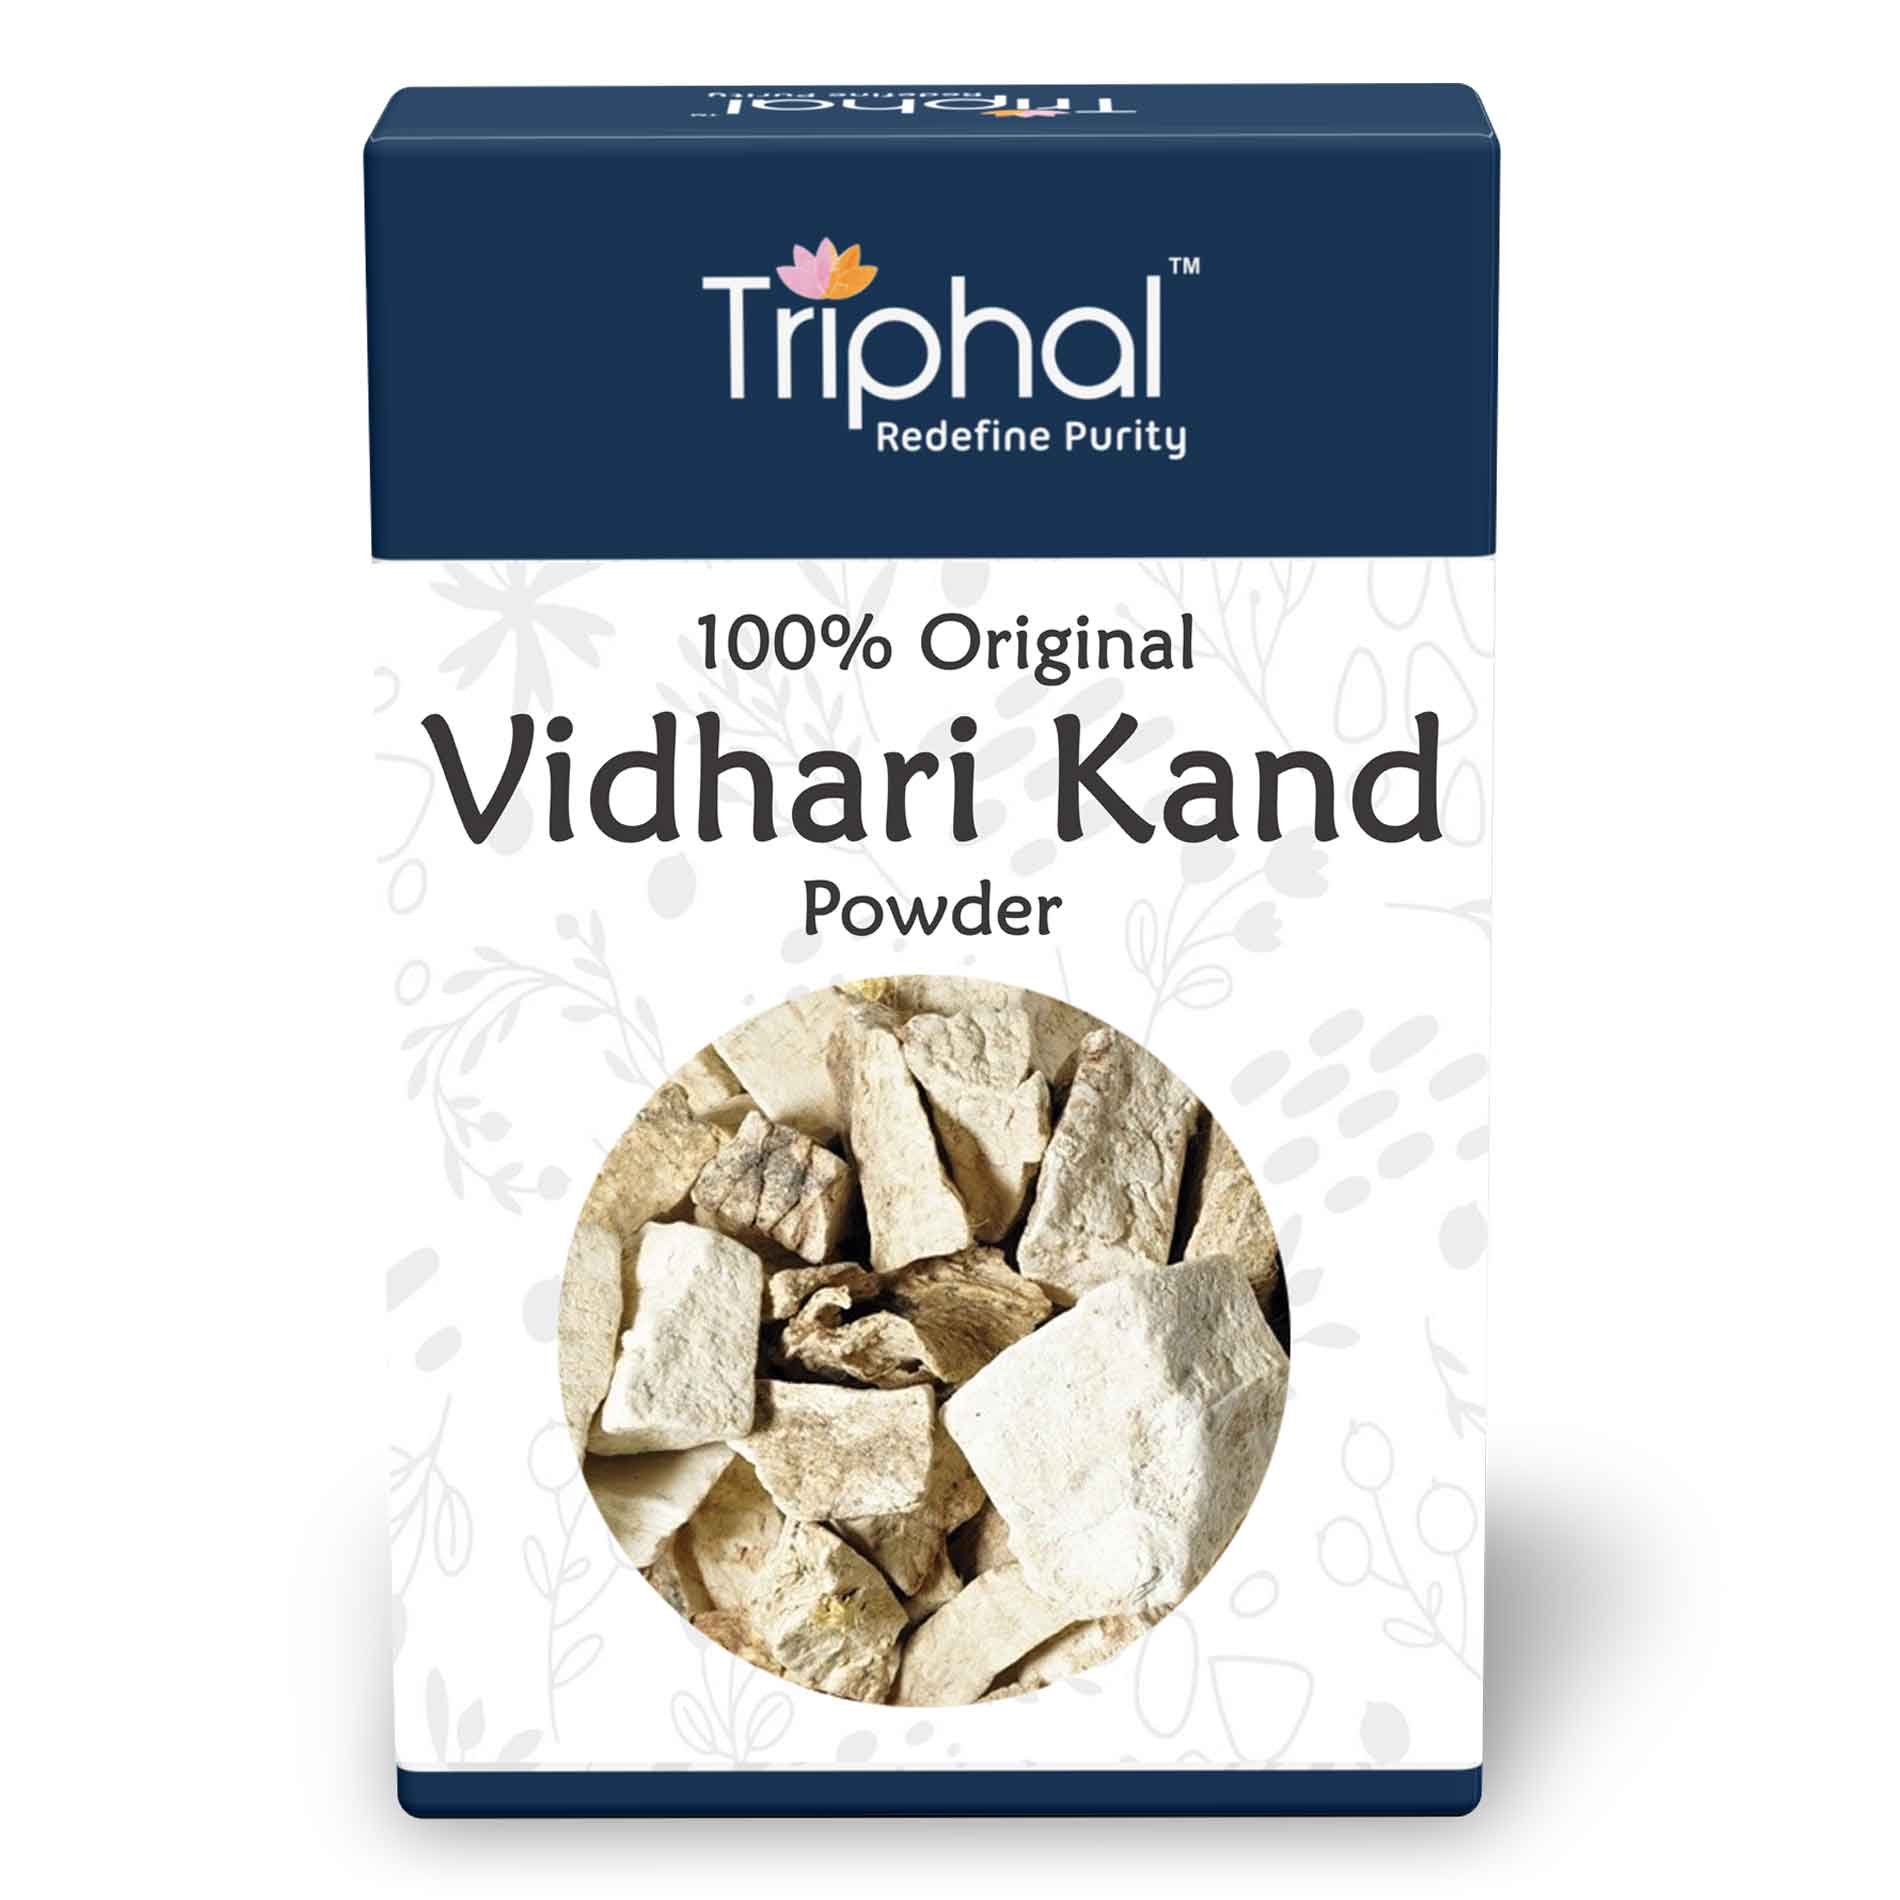 Vidarikand Powder by Triphal